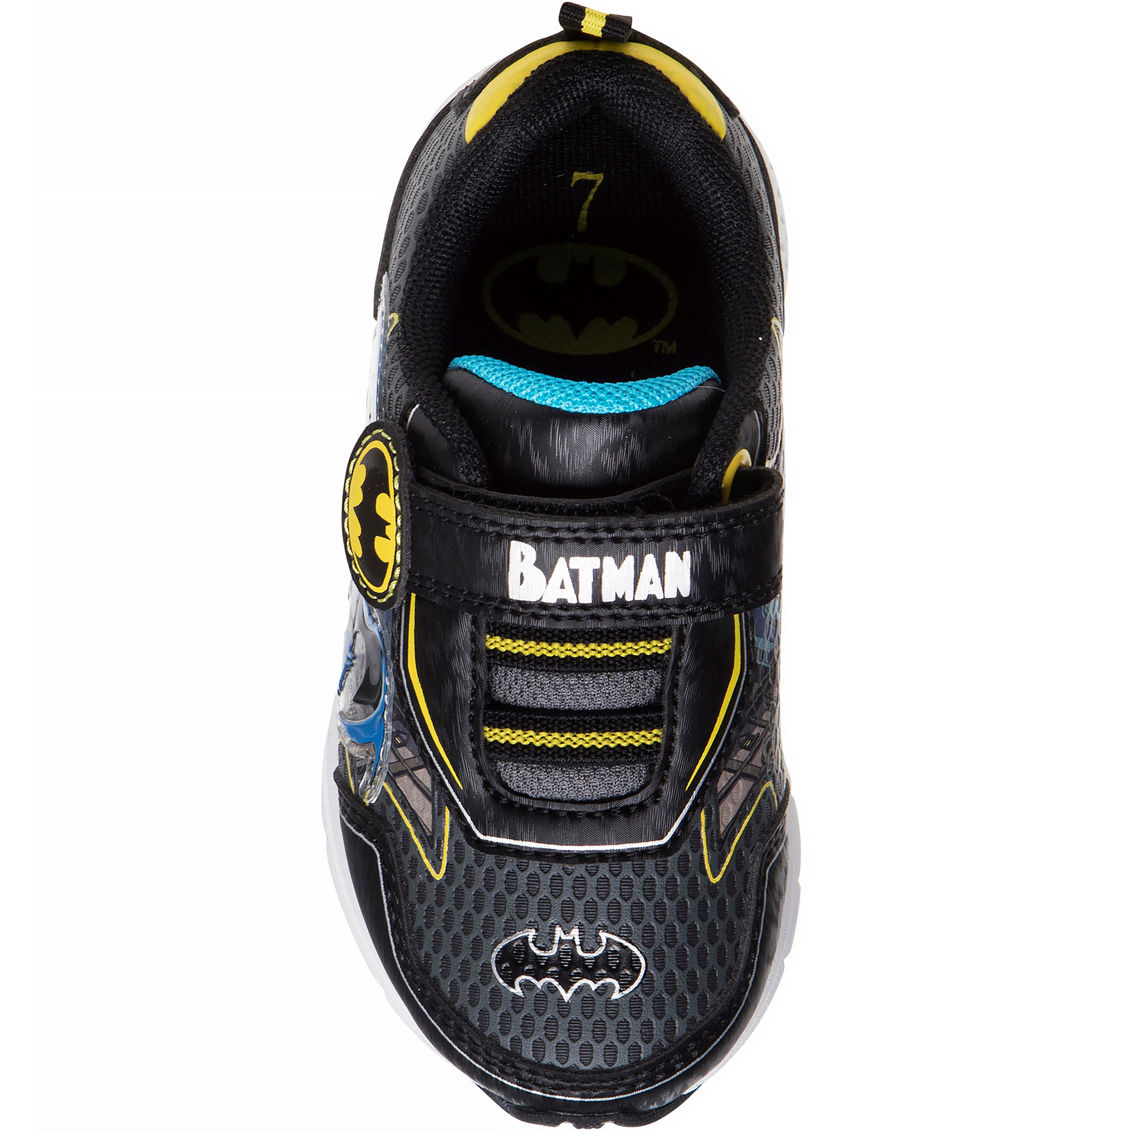 Batman Toddler Boys Sneakers - Image 3 of 4